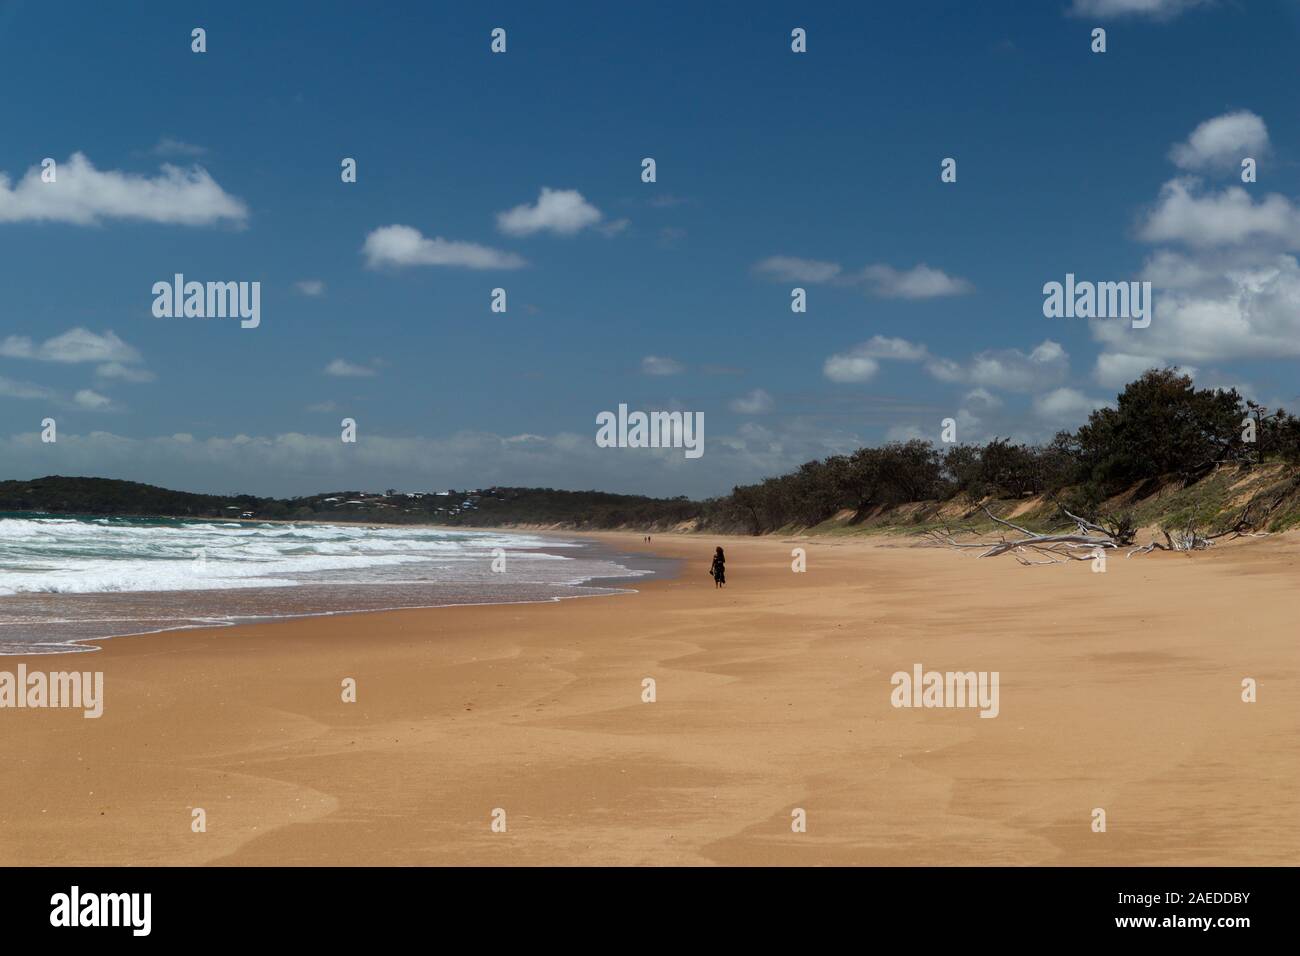 Lunga e remota spiaggia con solo una persona a piedi Foto Stock